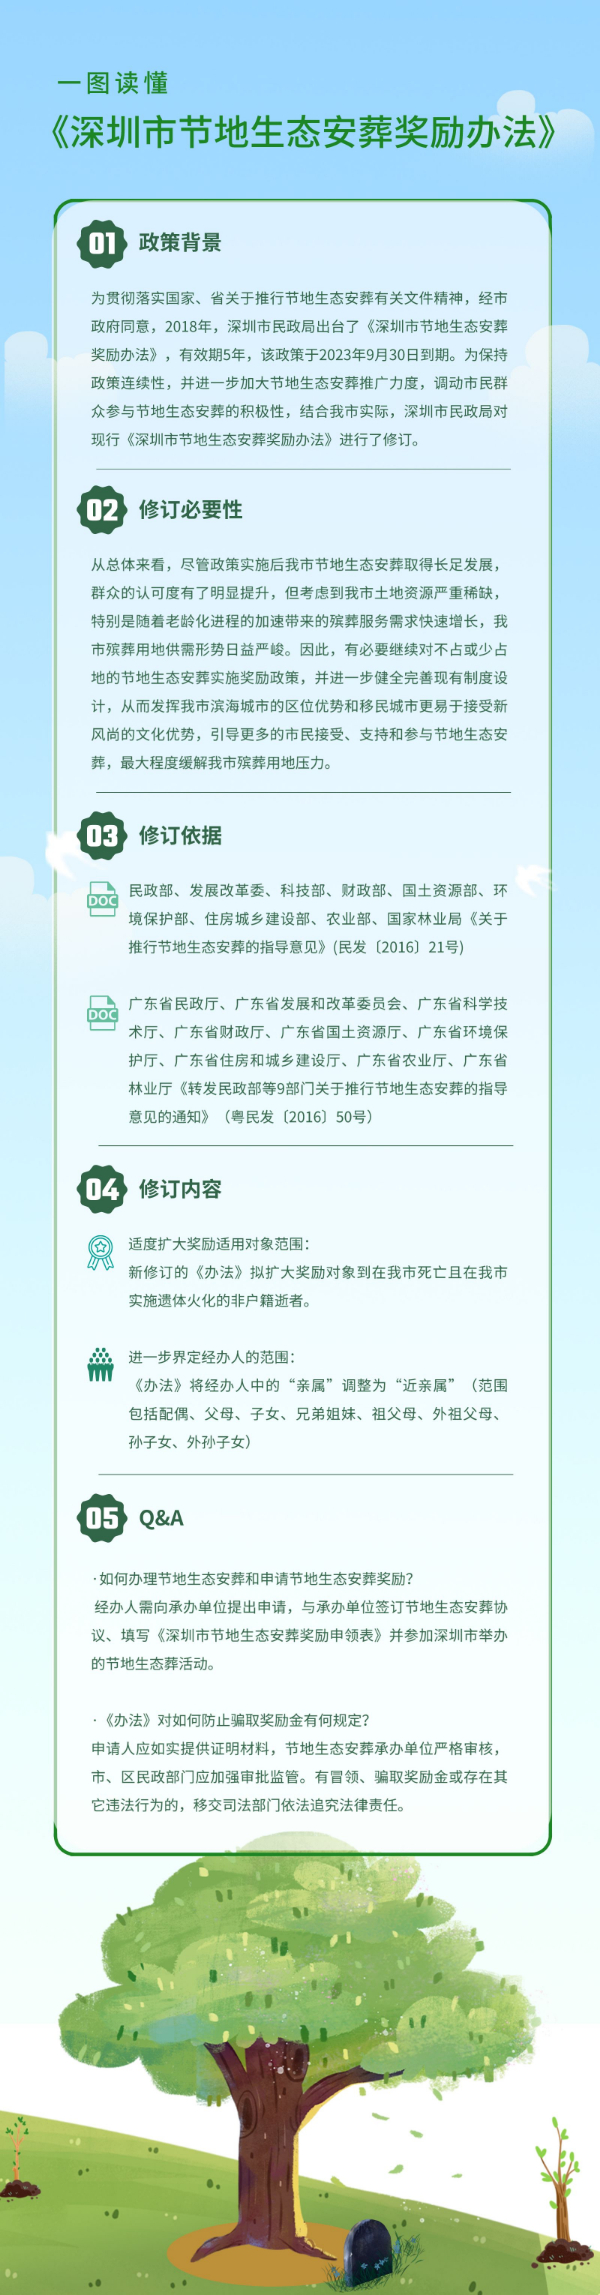 一图读懂《深圳市节地生态安葬奖励办法》 (2).png